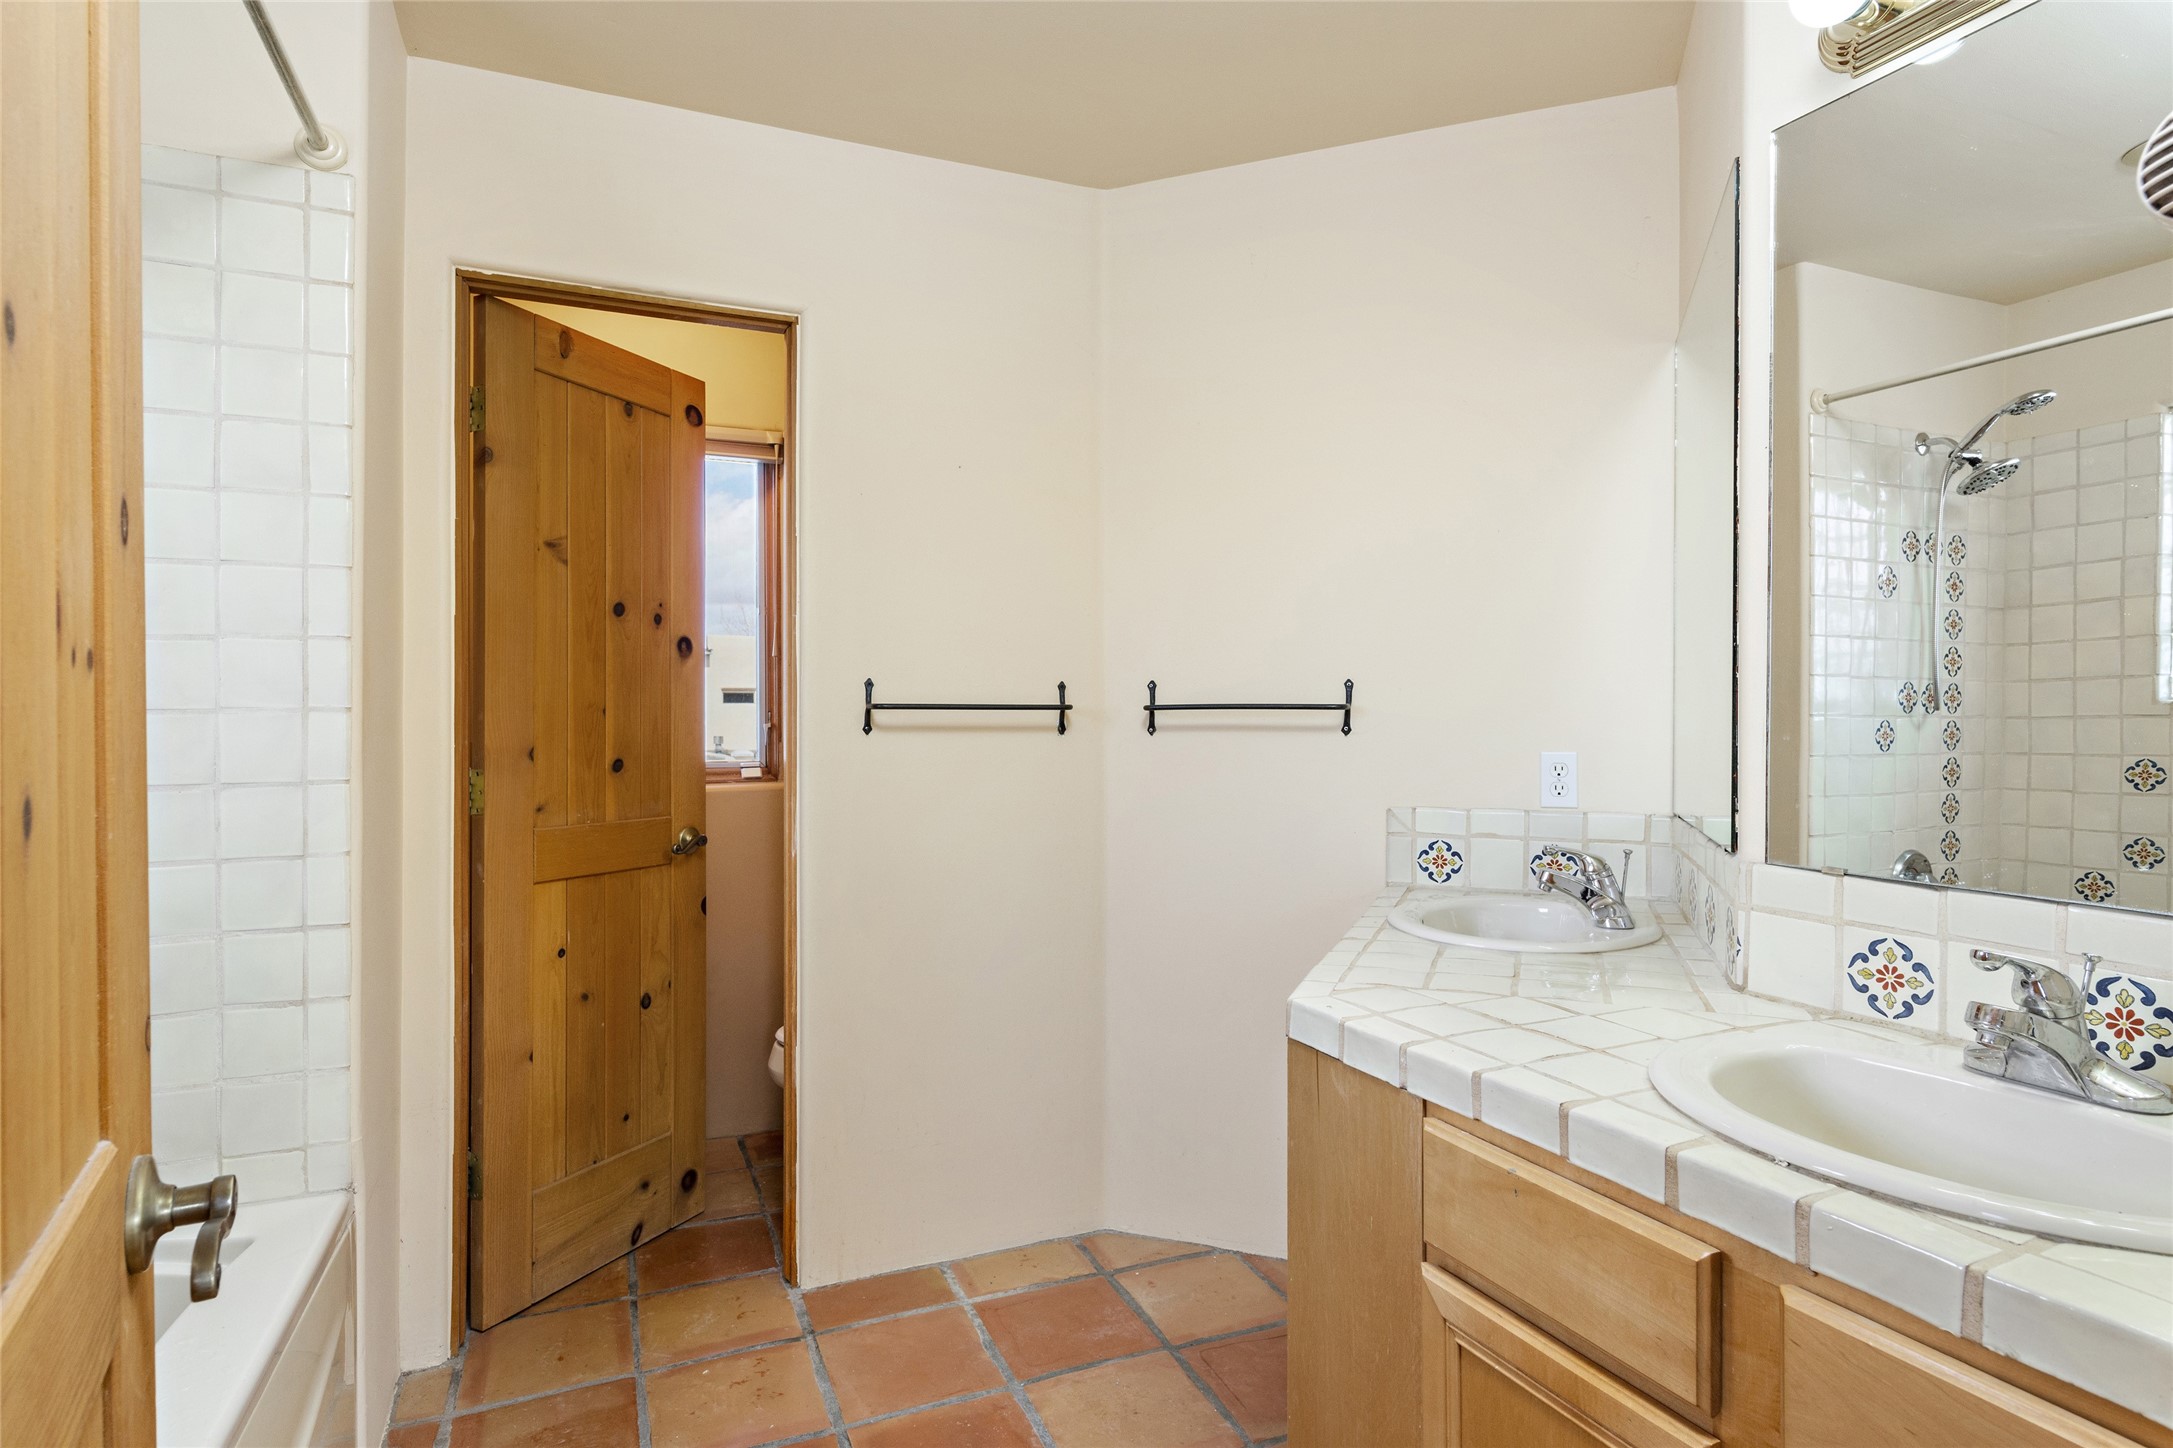 3217 La Paz Lane, Santa Fe, New Mexico 87507, 2 Bedrooms Bedrooms, ,3 BathroomsBathrooms,Residential,For Sale,3217 La Paz Lane,202234646